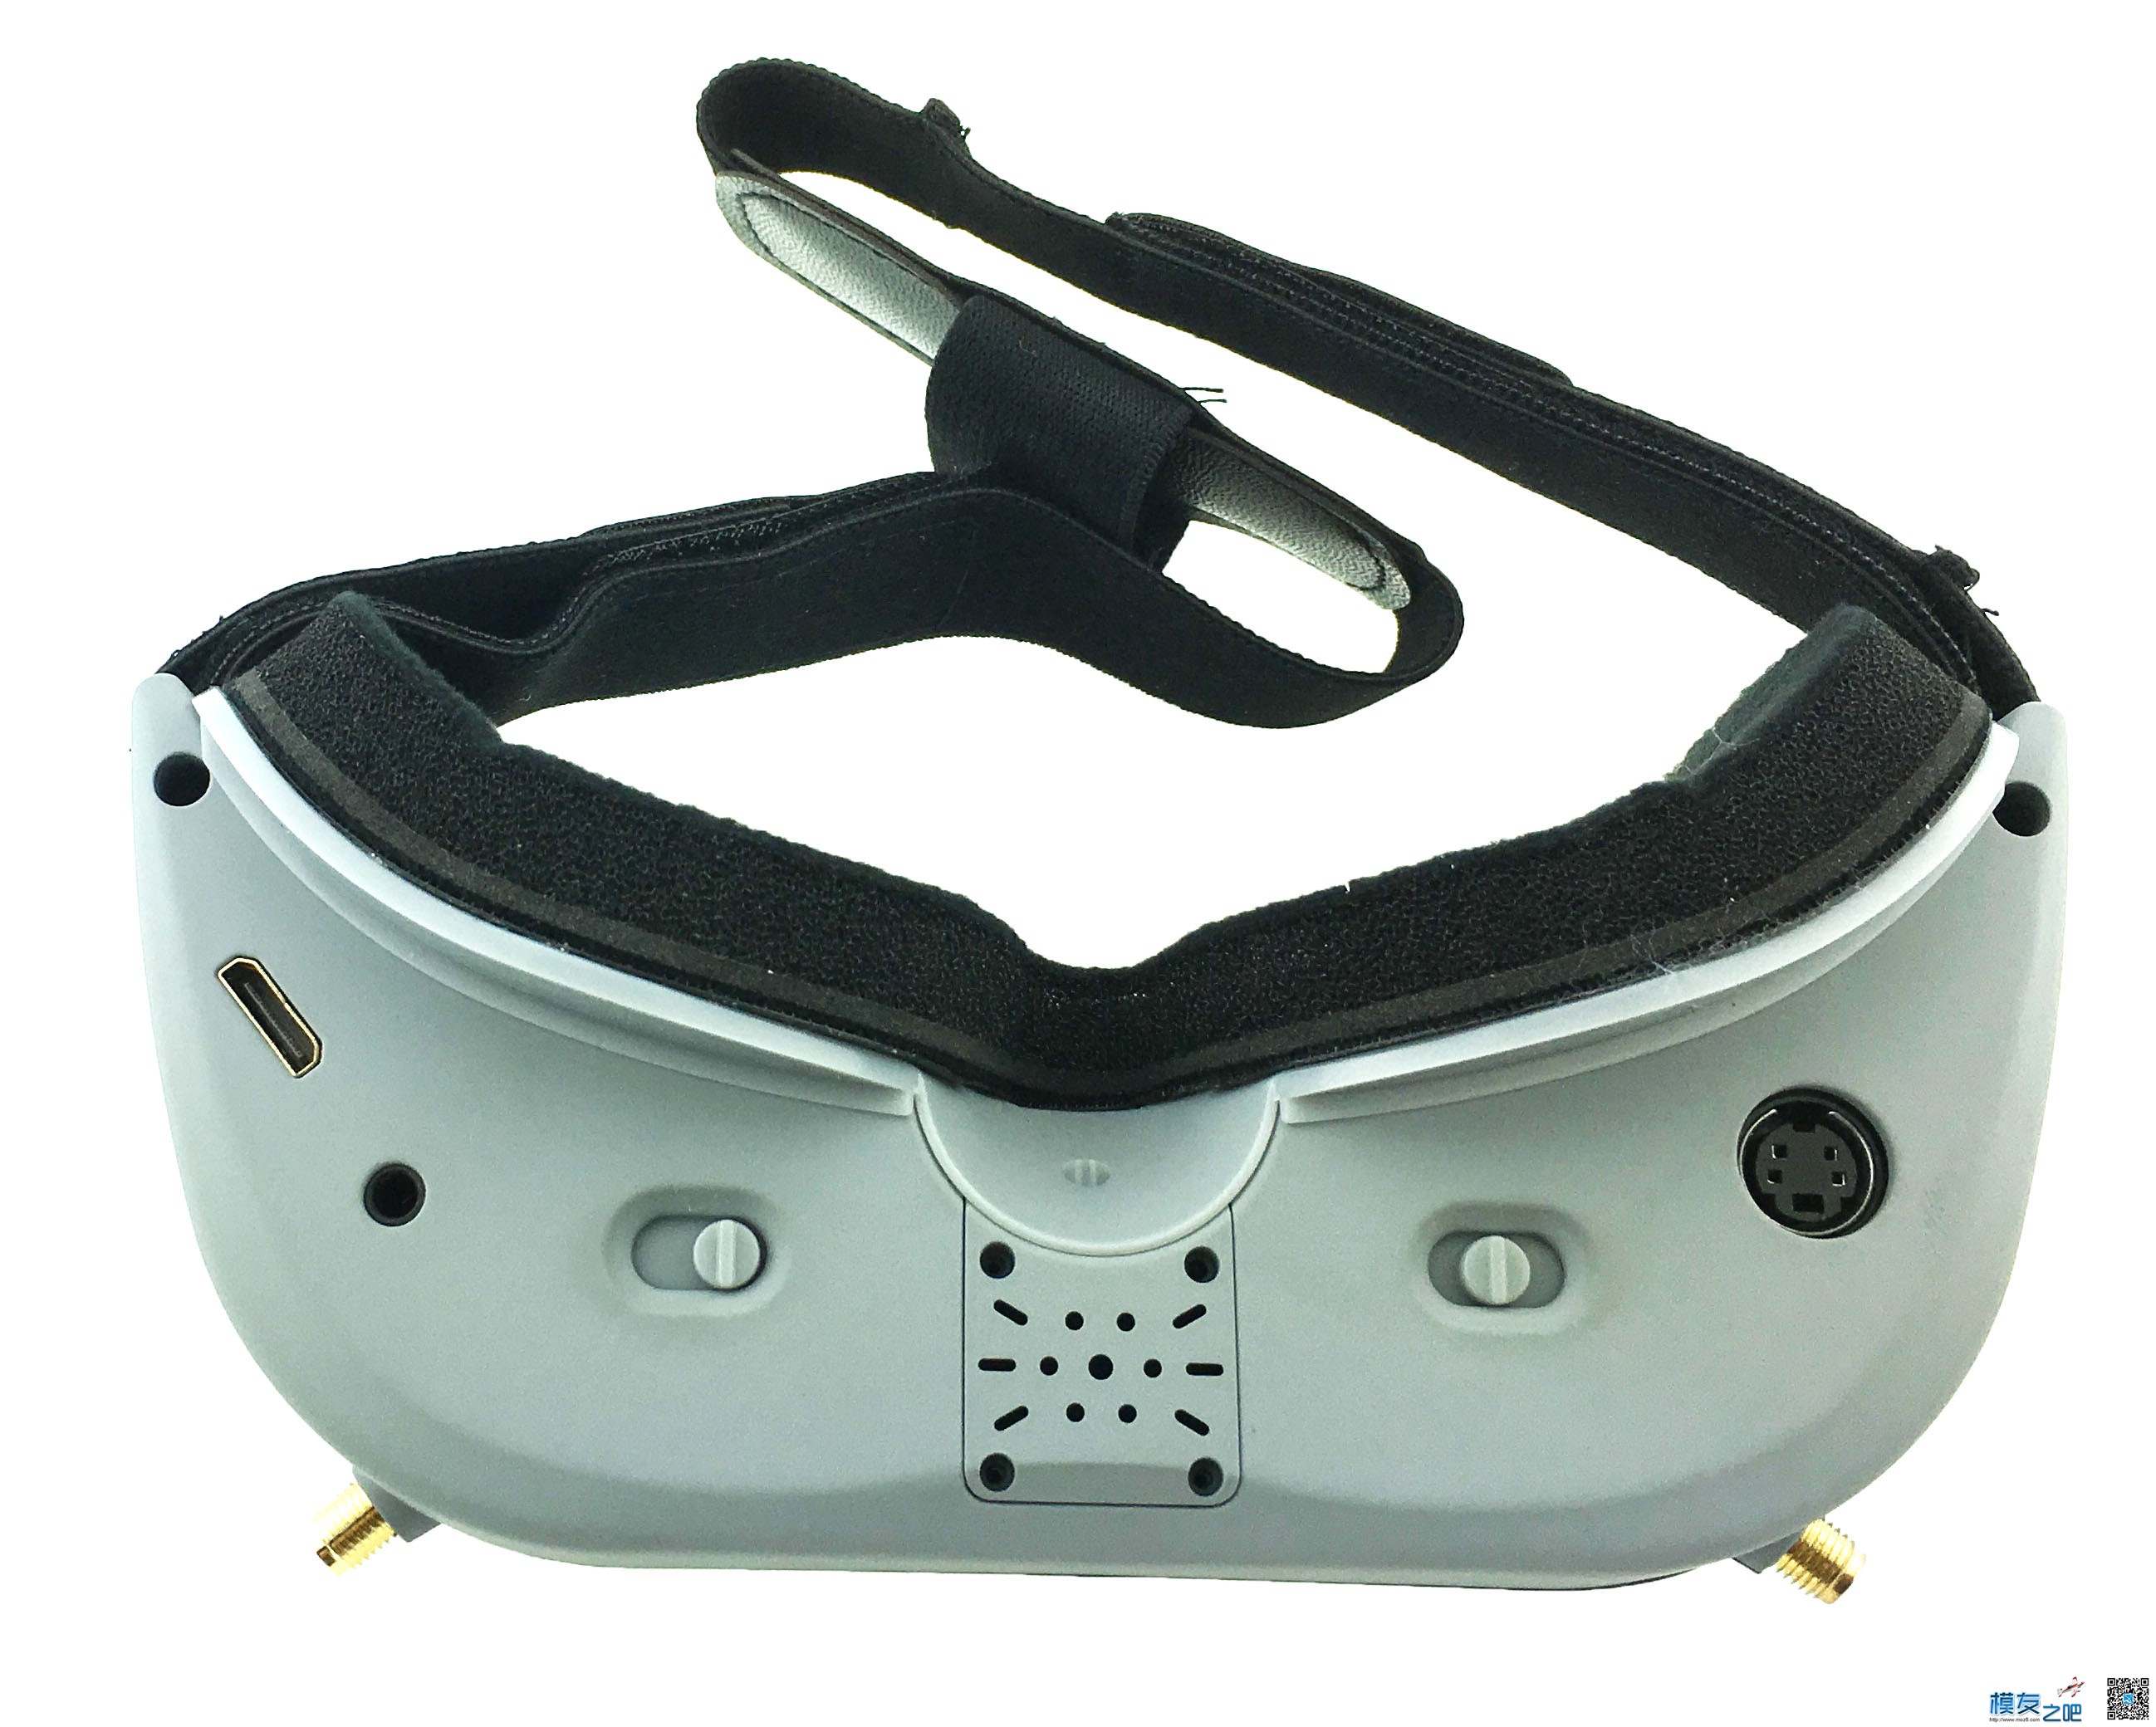 【新品】AOMWAY Commander 3D视频眼镜 FPV 神器开箱 新品,眼镜 作者:锦州二胖 8761 